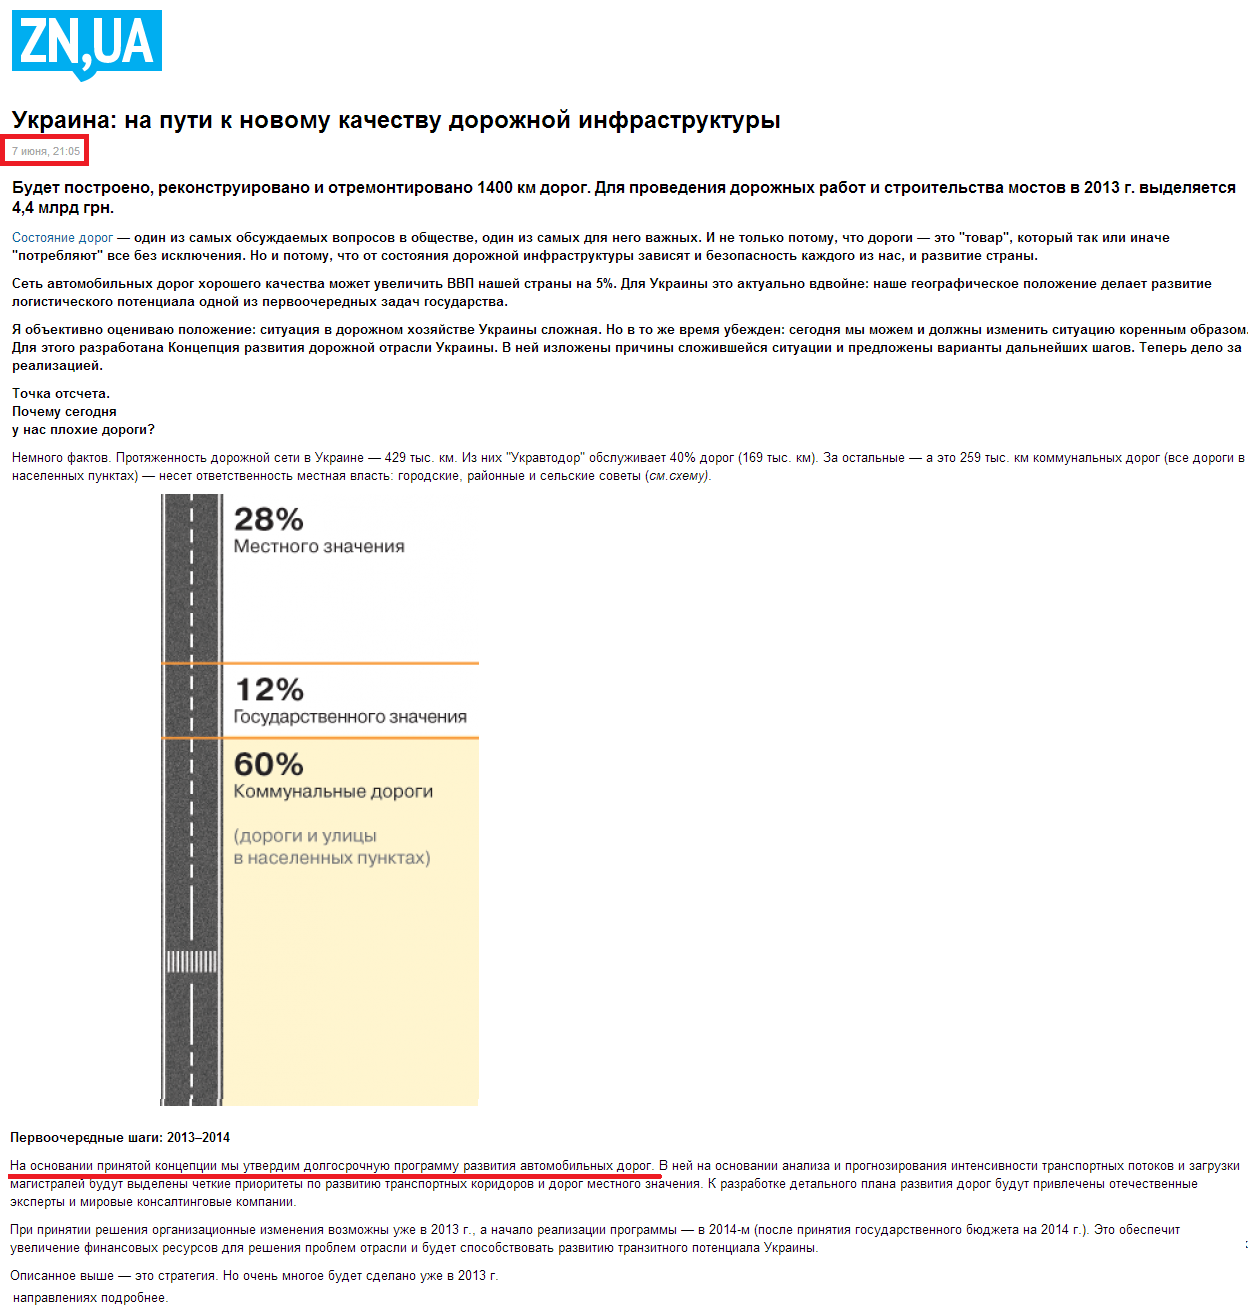 http://gazeta.zn.ua/finances/ukraina-na-puti-k-novomu-kachestvu-dorozhnoy-infrastruktury-_.html